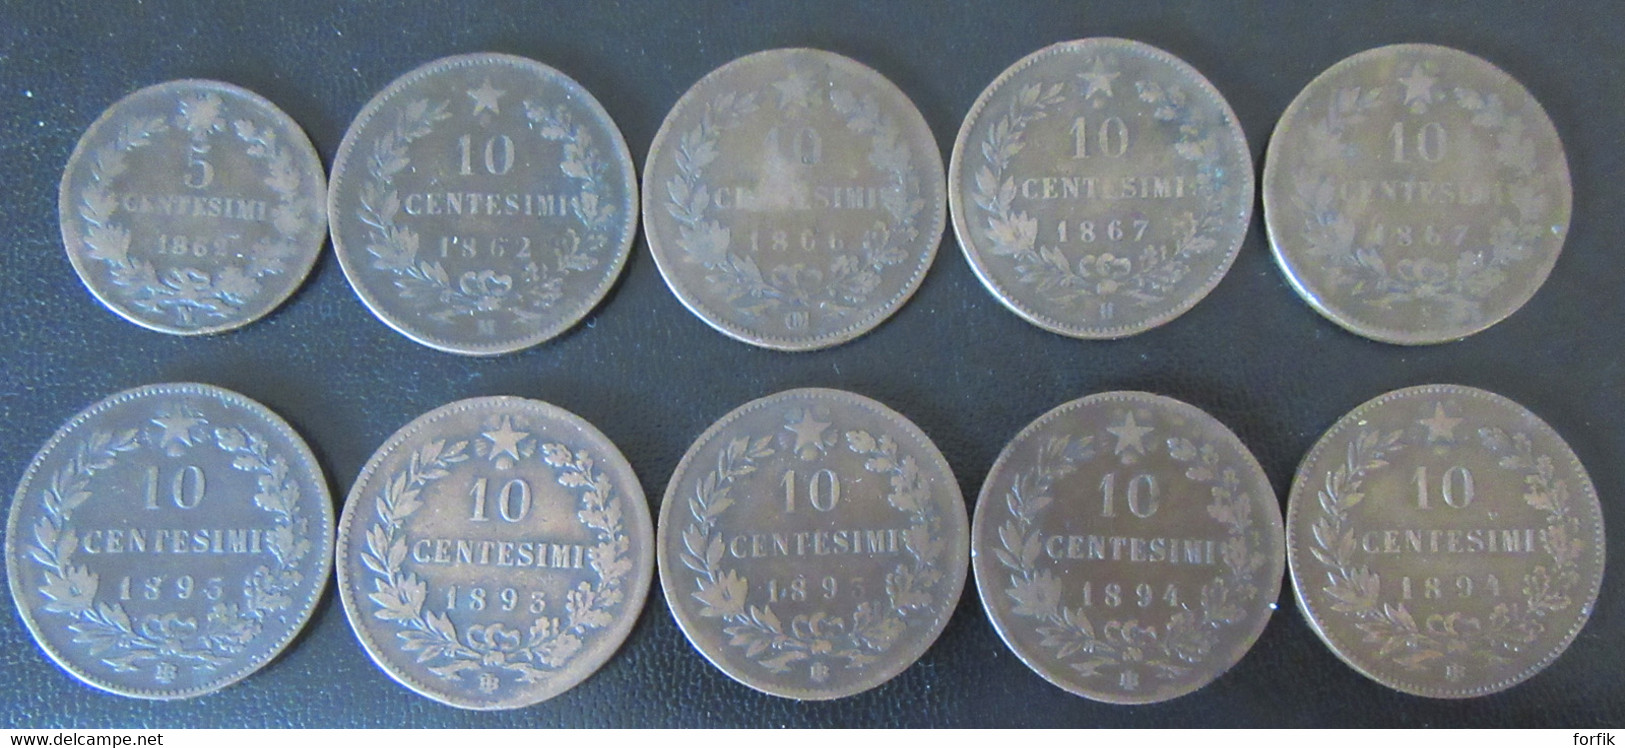 Italie / Italia - 10 Monnaies 5 Centesimi 1862 + 10 Centesimi 1862 à 1894 - Sammlungen